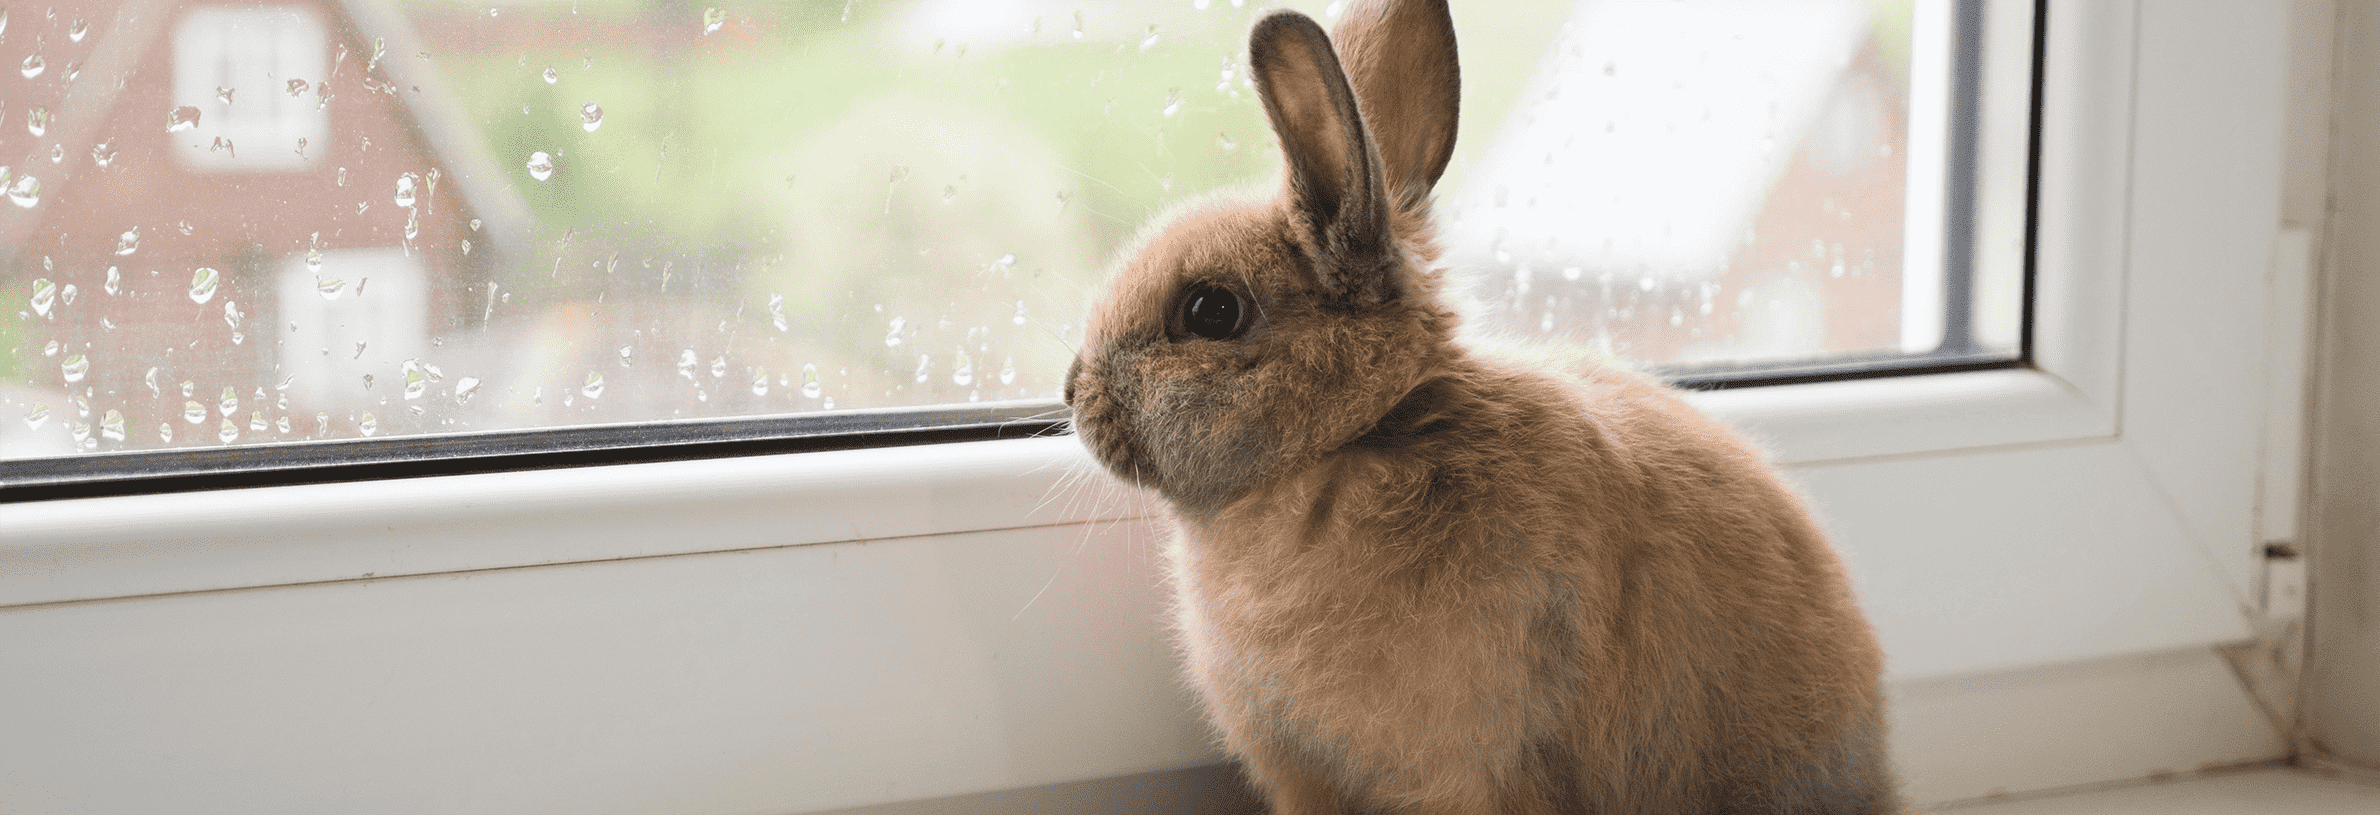 Myiasis konijn, wat moet ik weten?